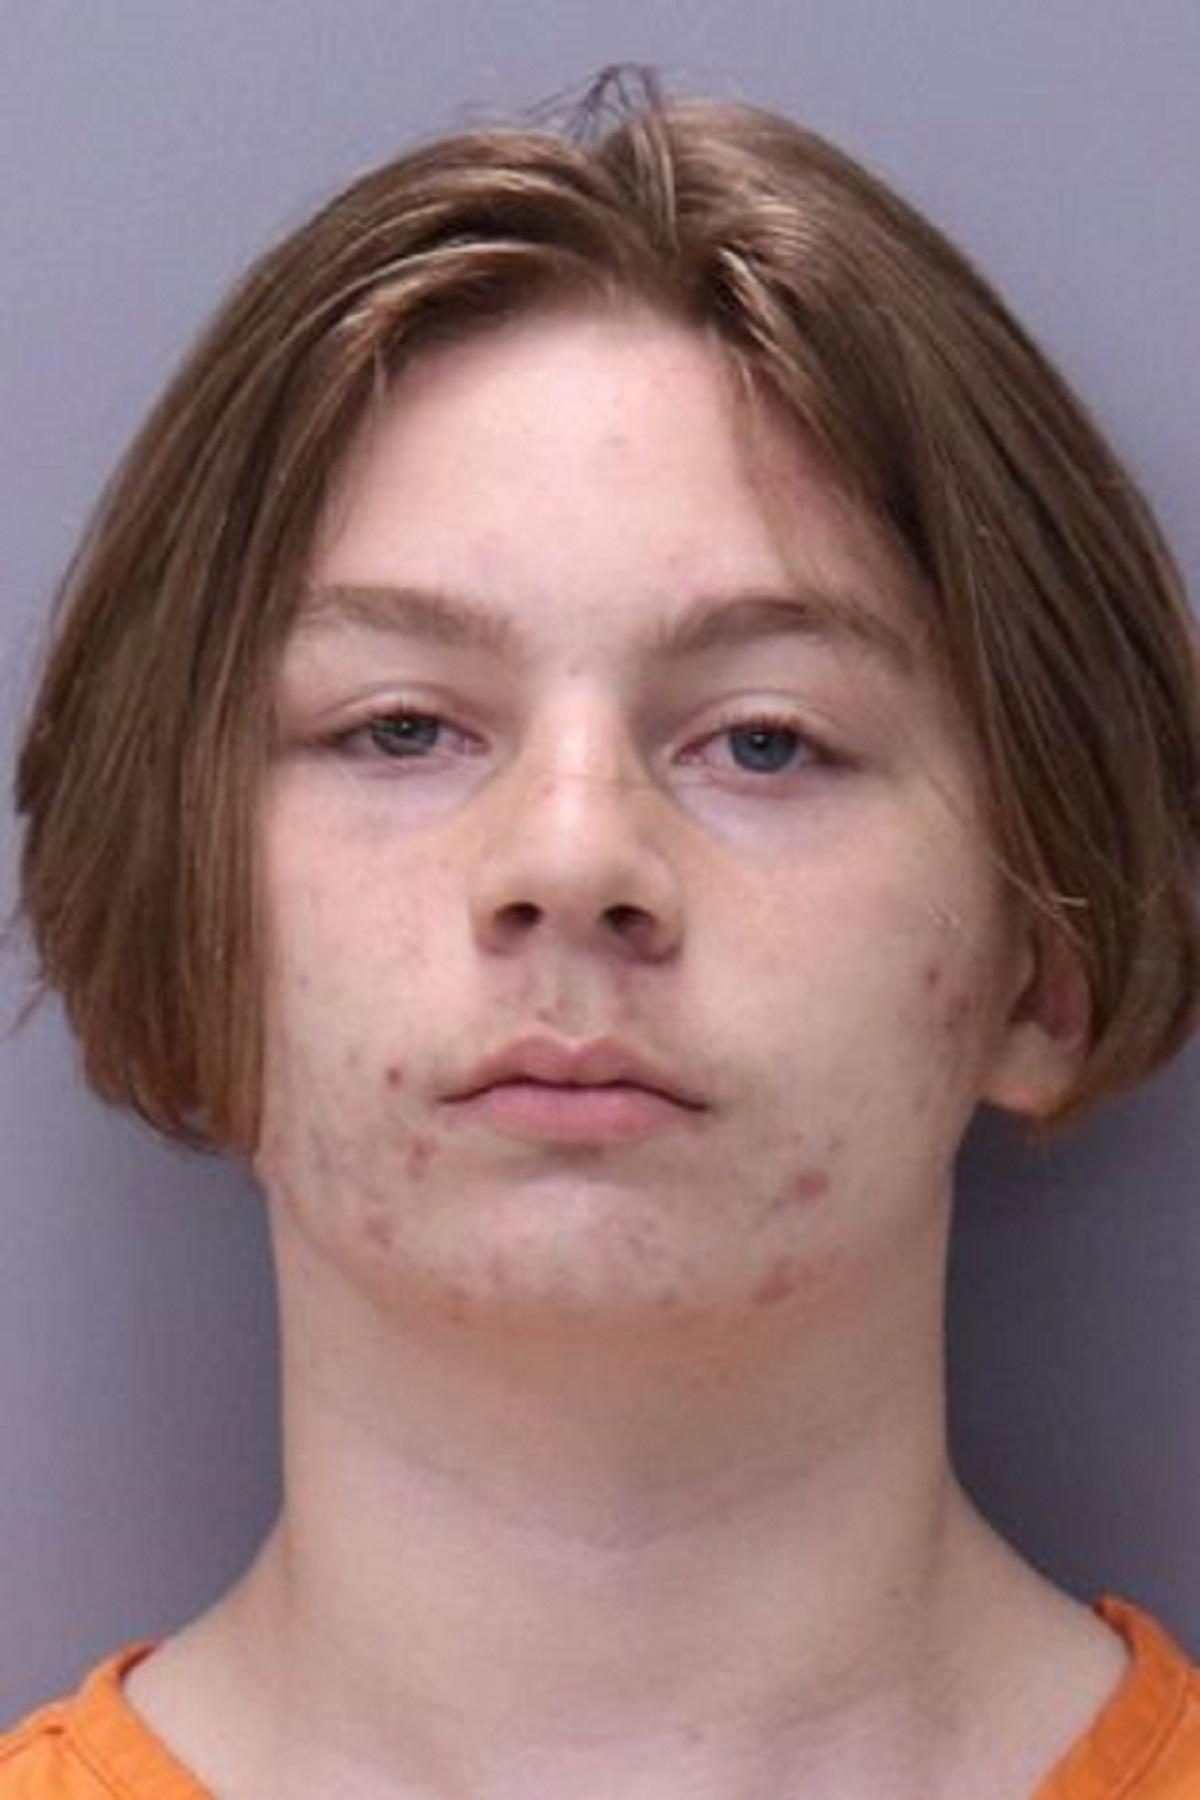 tânăr acuzat de uciderea unei majorete de 13 ani, în SUA